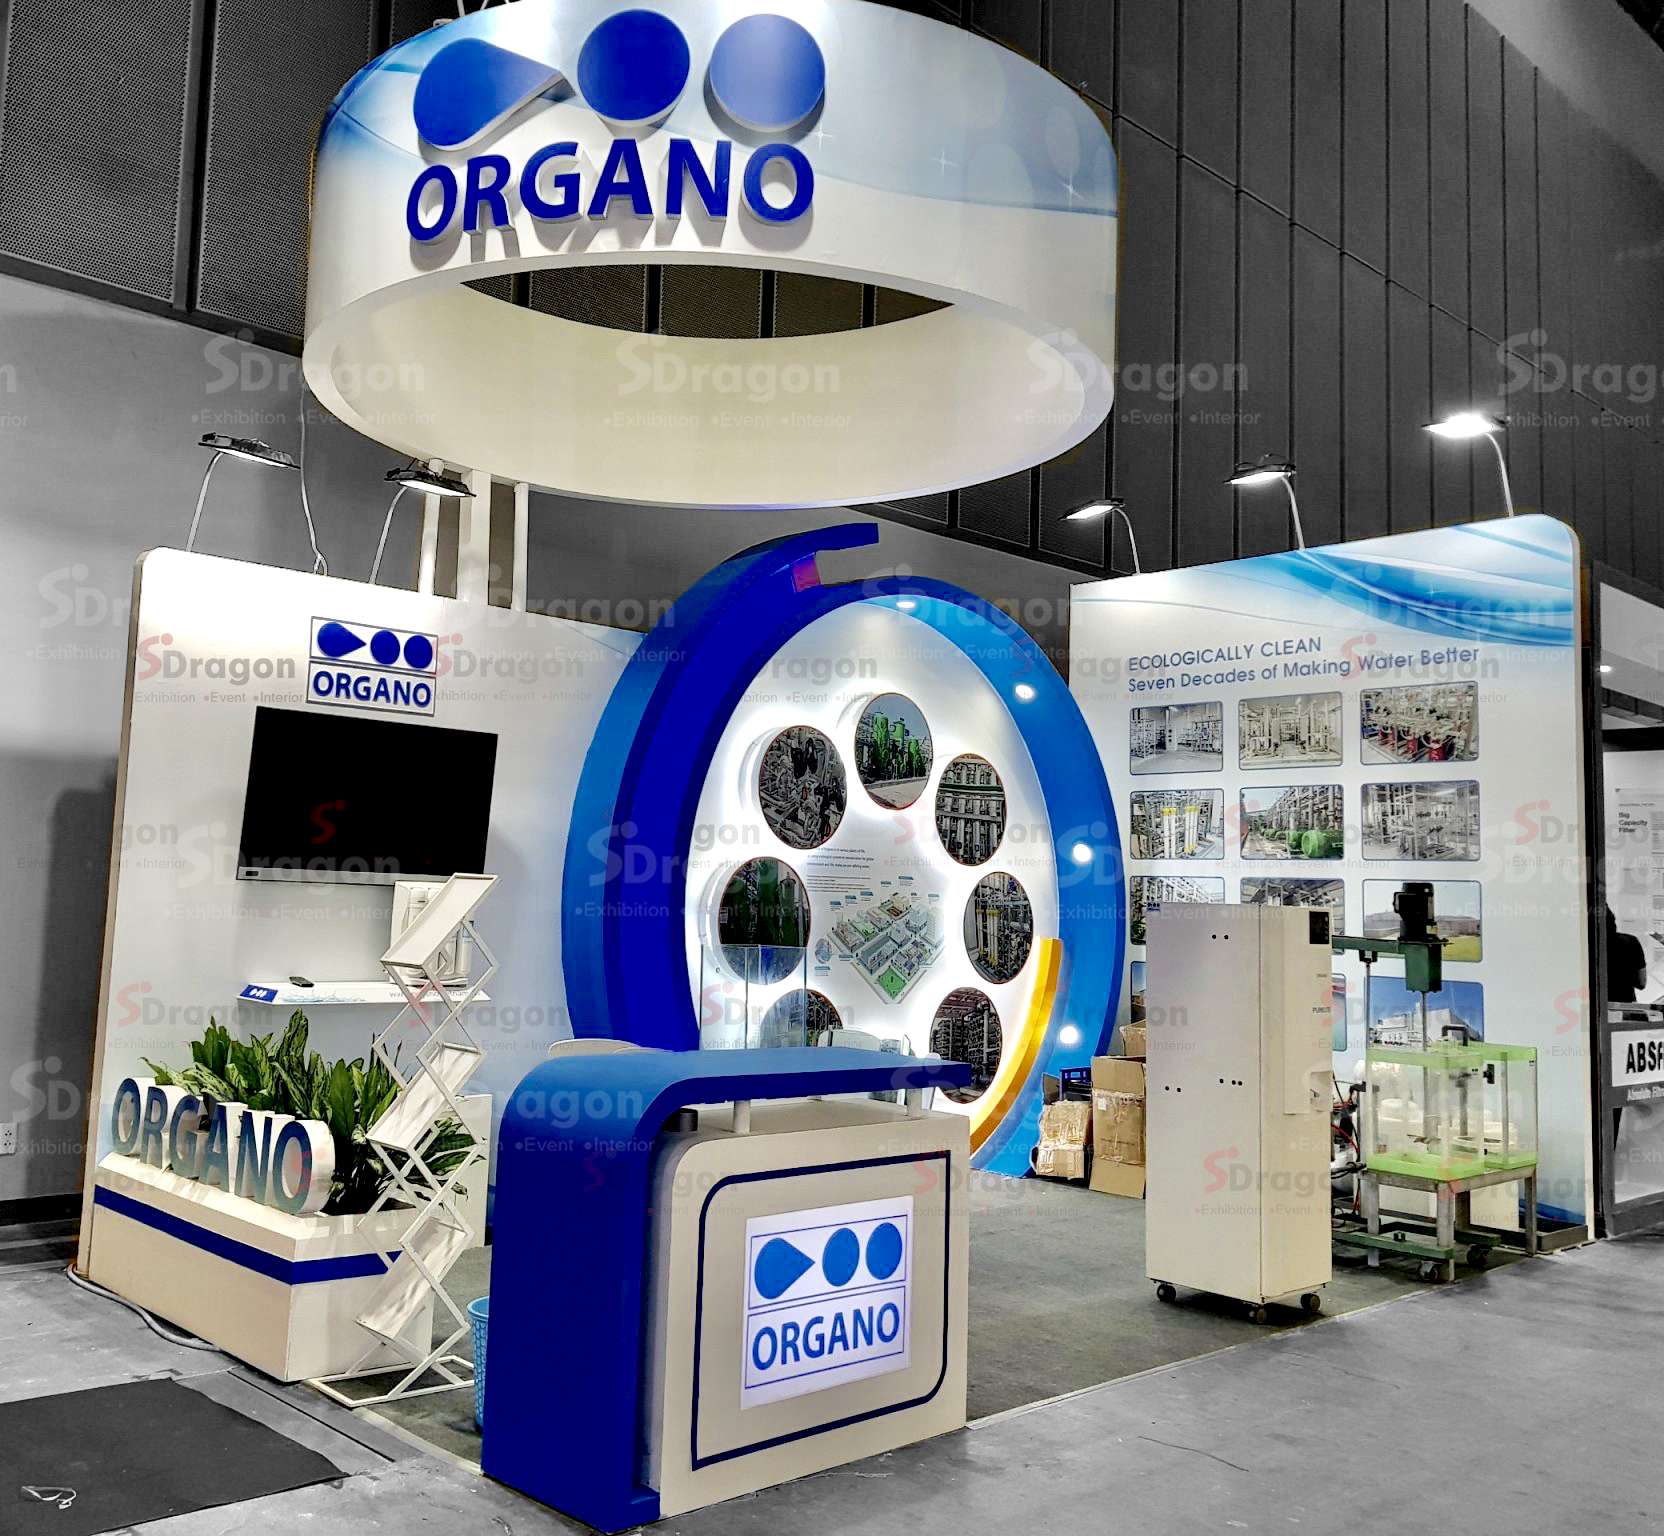 SDragon thiết kế và thi công hoàn thiện gian hàng công ty ORGANO